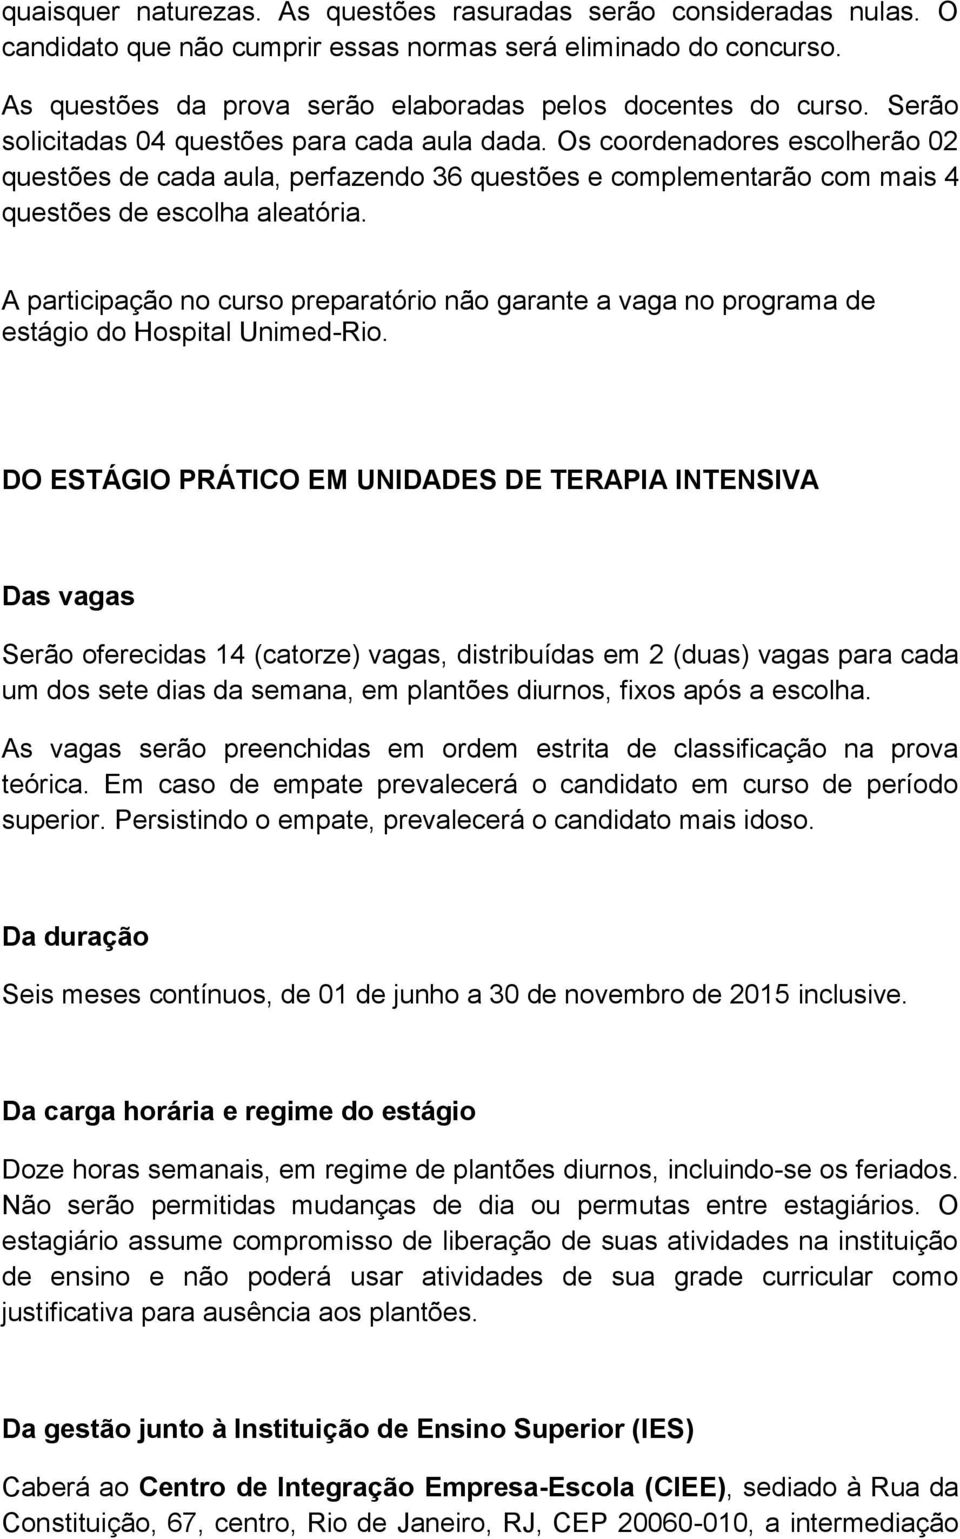 A participação no curso preparatório não garante a vaga no programa de estágio do Hospital Unimed-Rio.